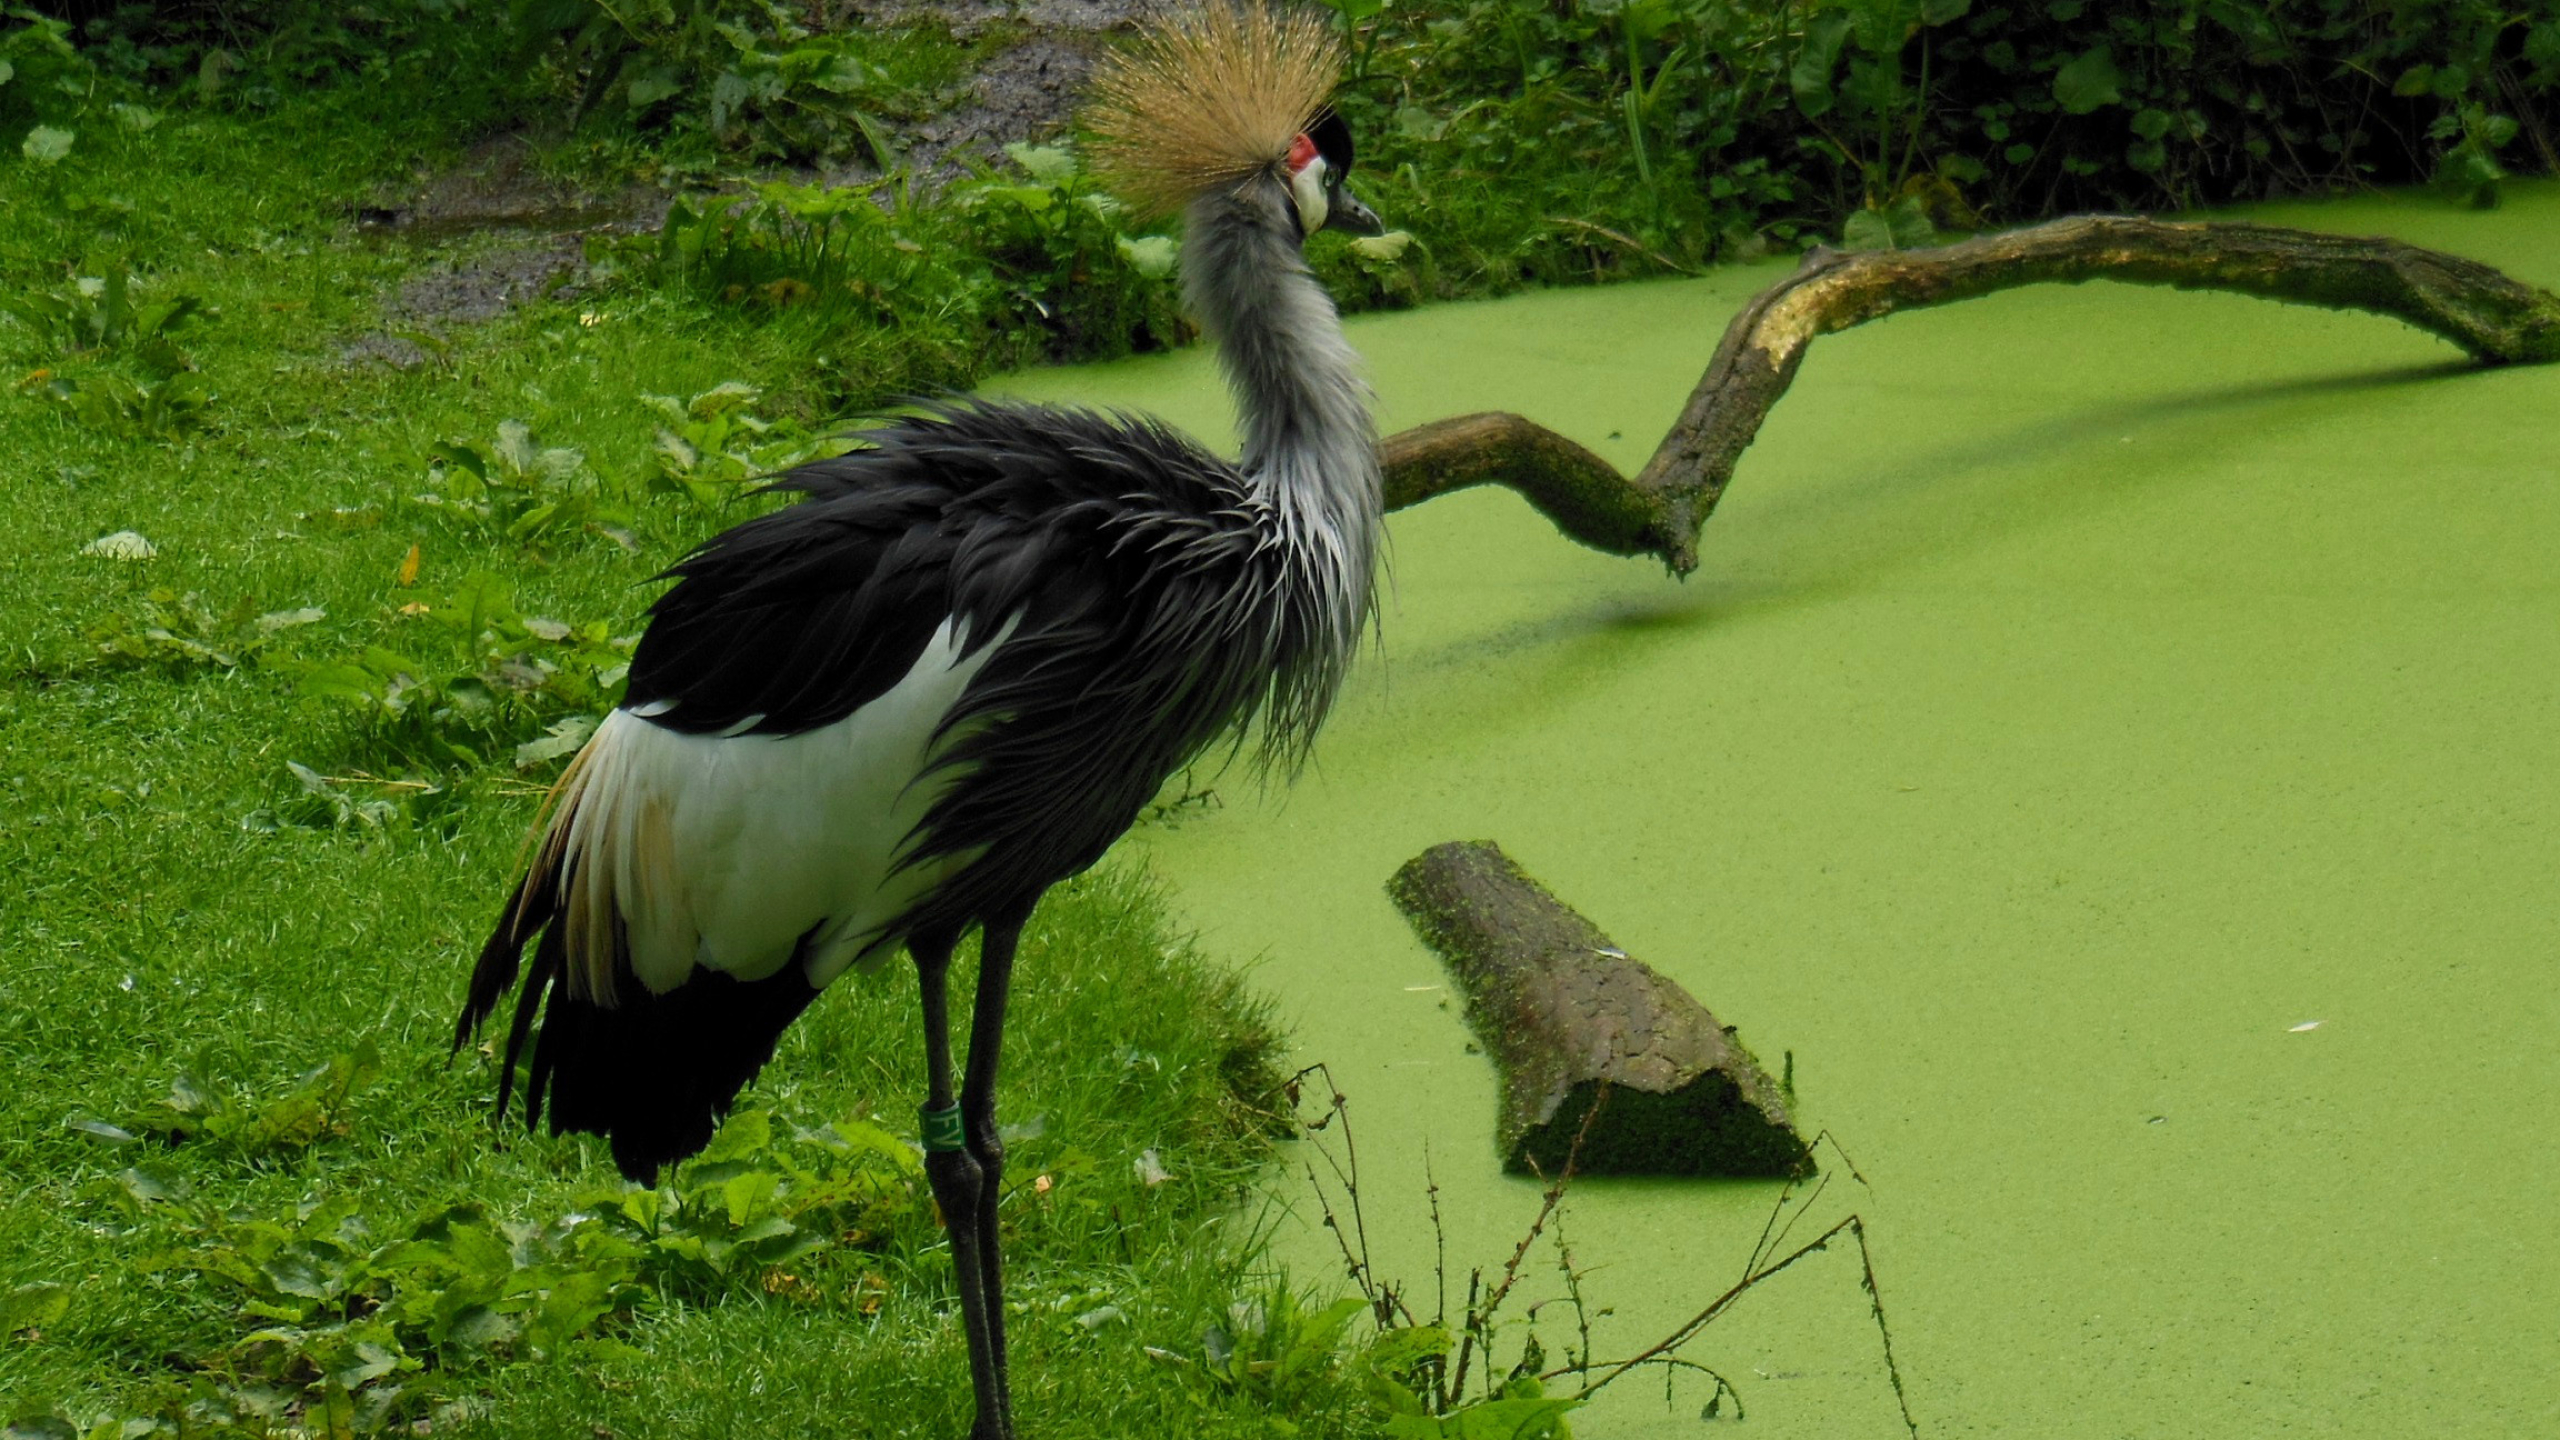 Grey crowned crane wallpapers, Beautiful avian species, HD backgrounds, Wildlife photography, 2560x1440 HD Desktop